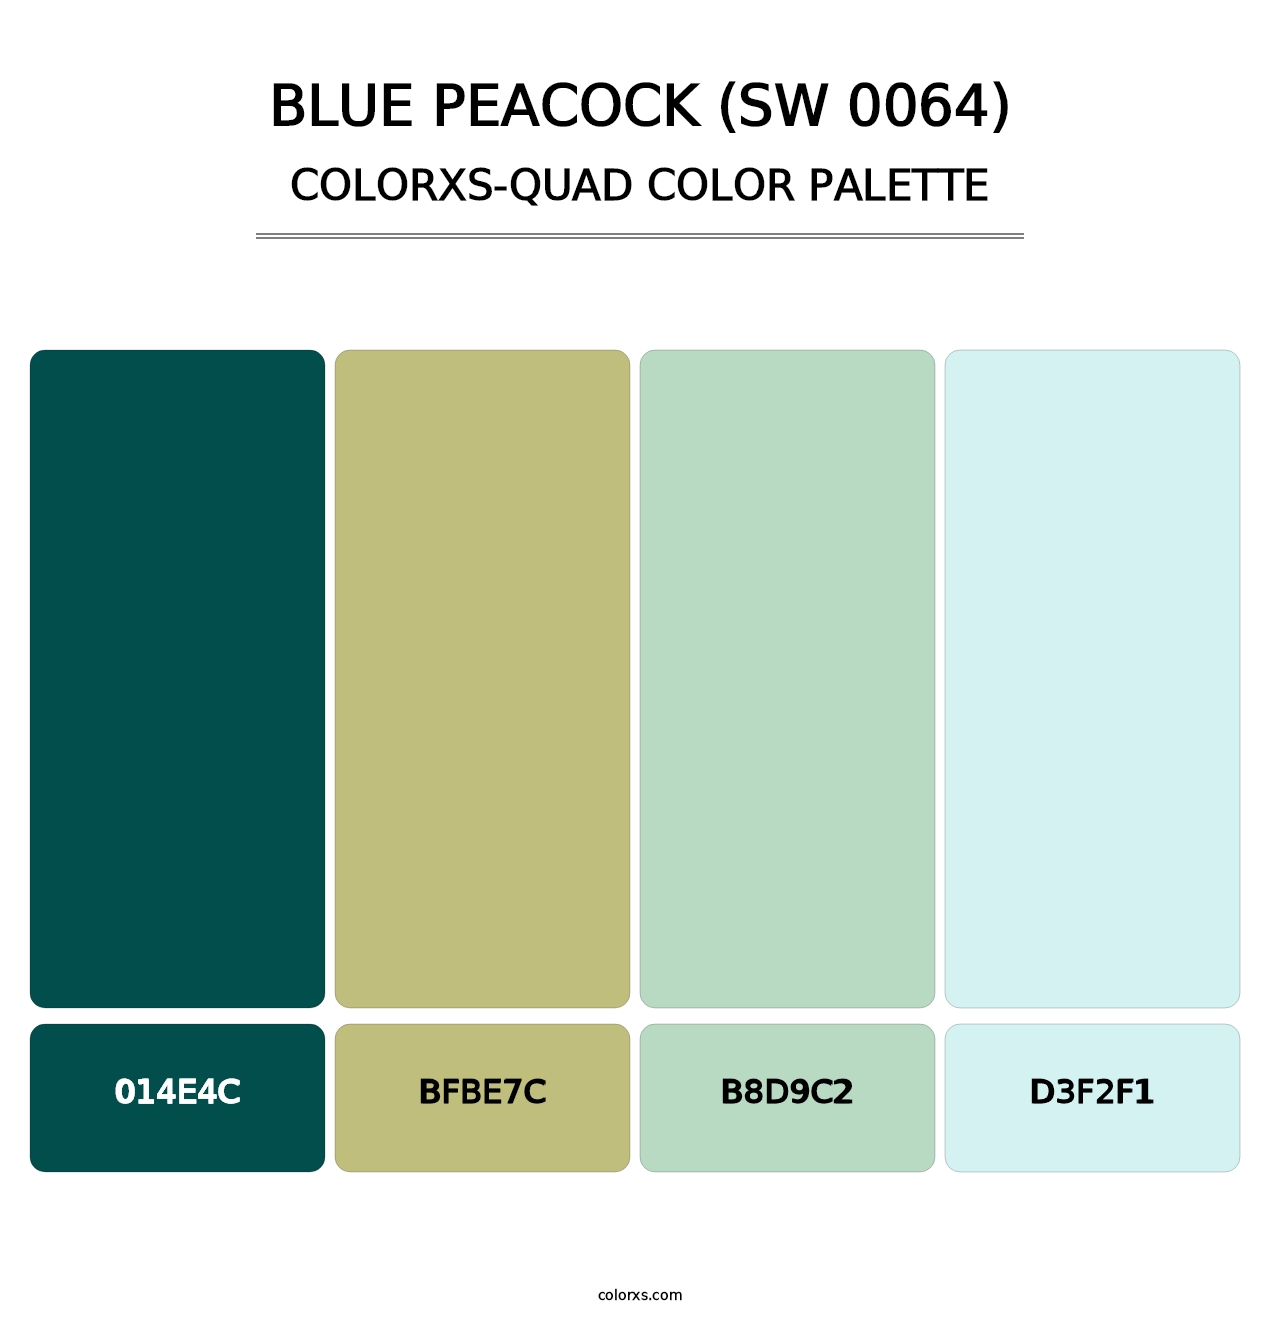 Blue Peacock (SW 0064) - Colorxs Quad Palette